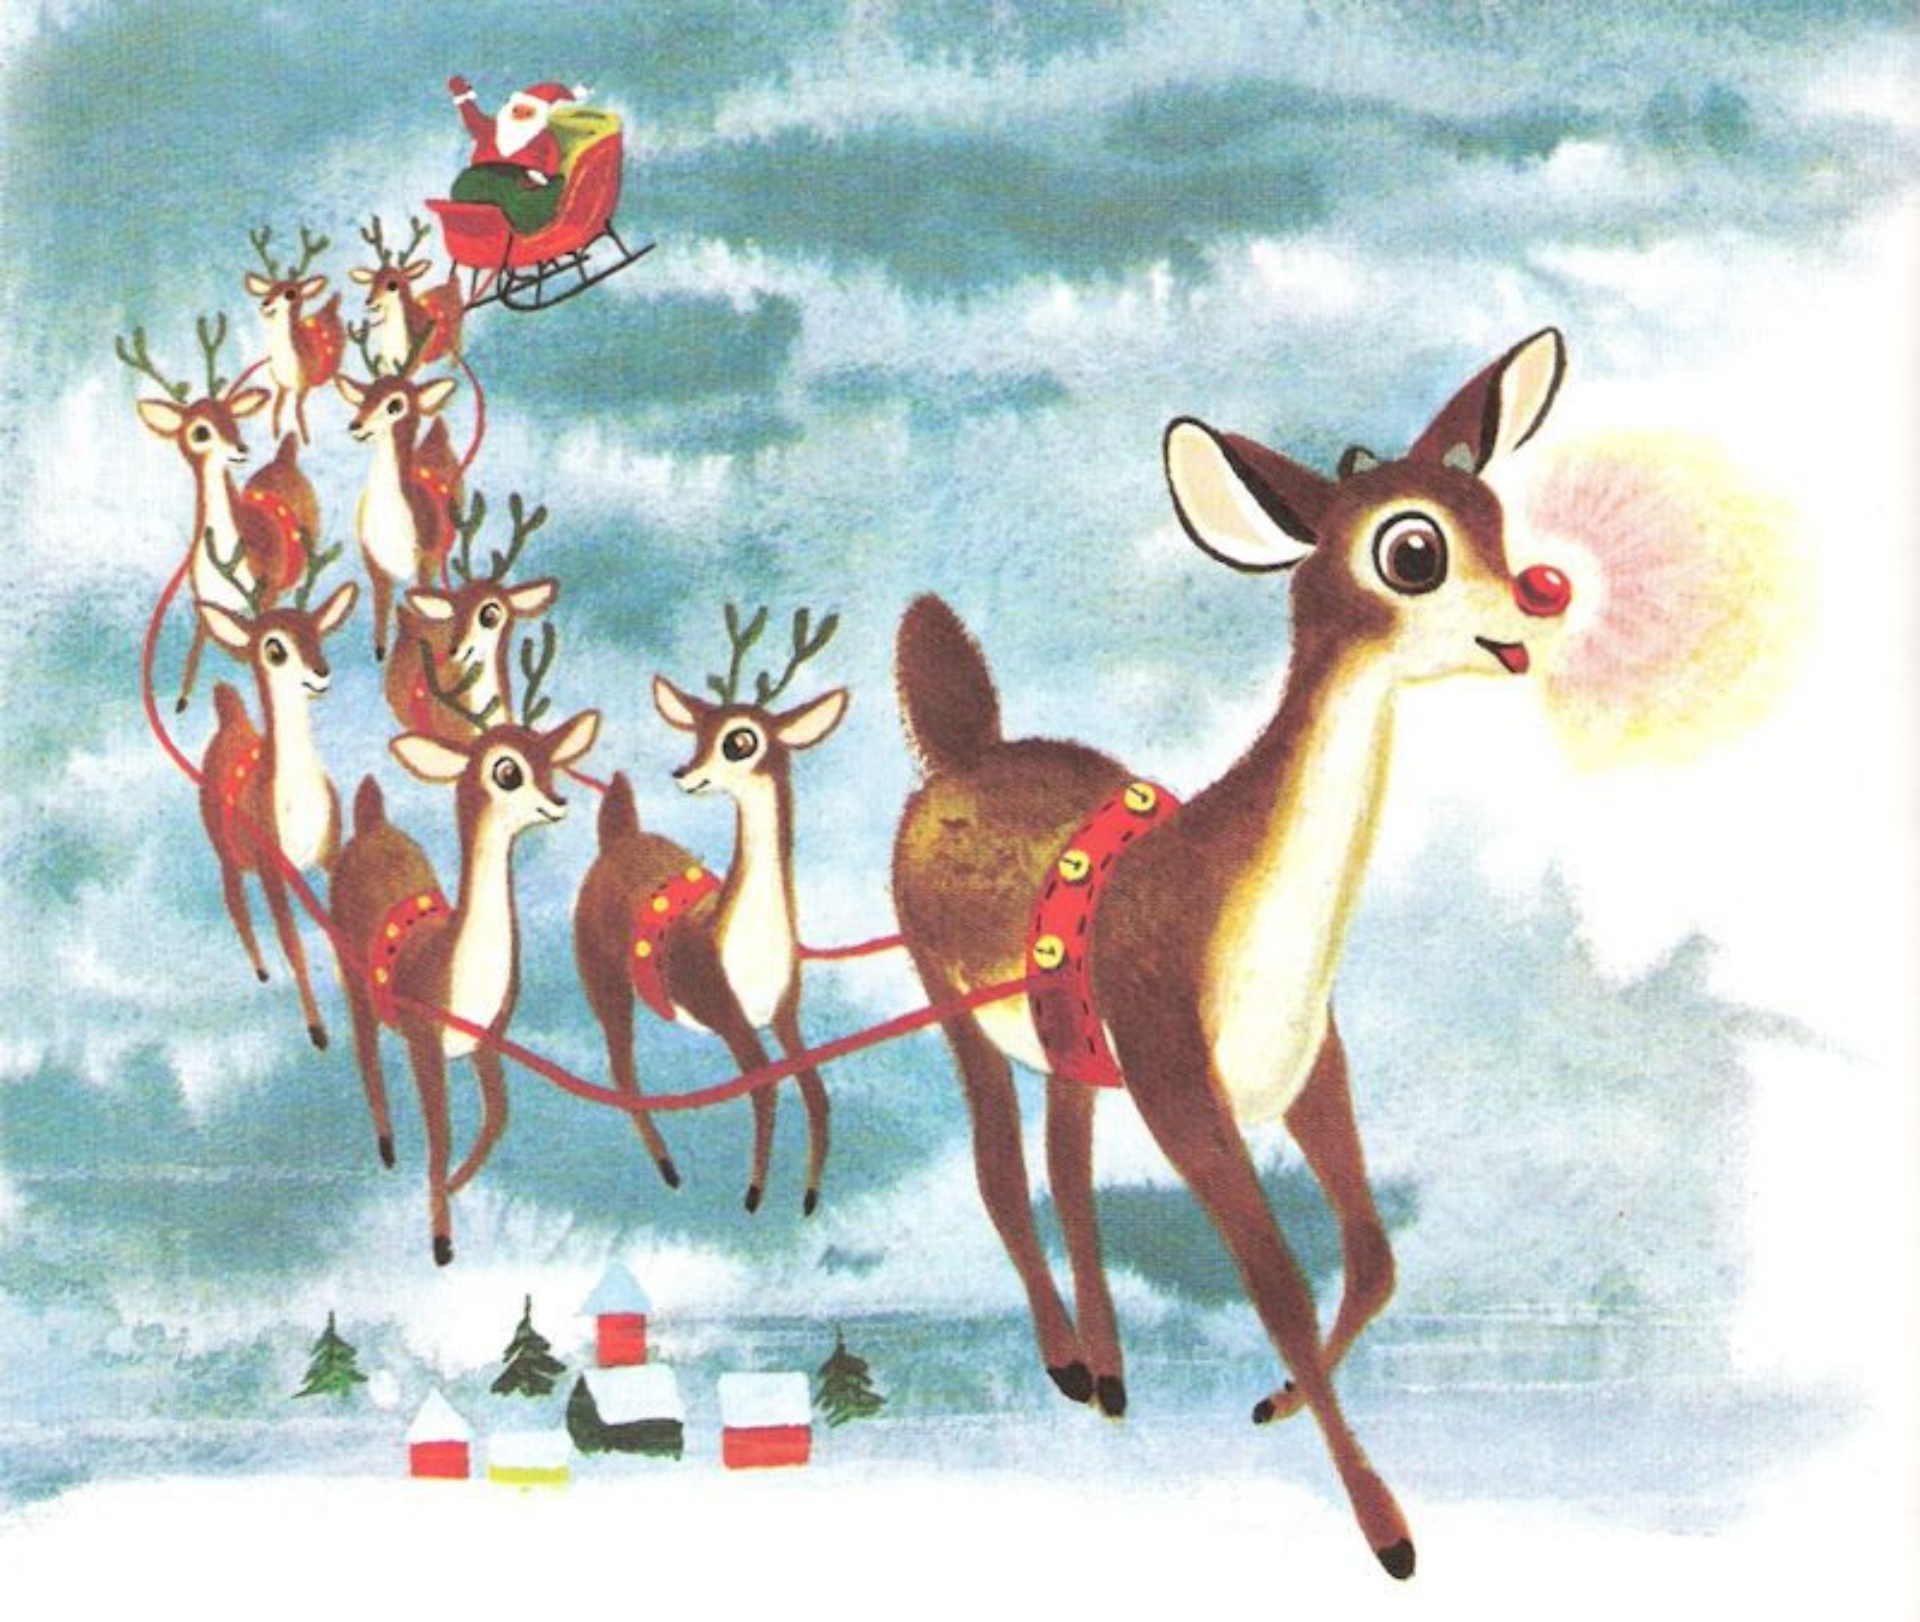 Ông già Noel và bầy tuần lộc đêm Giáng sinh: Hình ảnh Ông già Noel luôn là một phần không thể thiếu trong mùa Giáng sinh. Thêm vào đó là những chú tuần lộc đáng yêu càng khiến hình ảnh này trở nên thú vị và ấm áp hơn bao giờ hết. Hãy xem ngay để cảm nhận không khí noel đang đến gần.